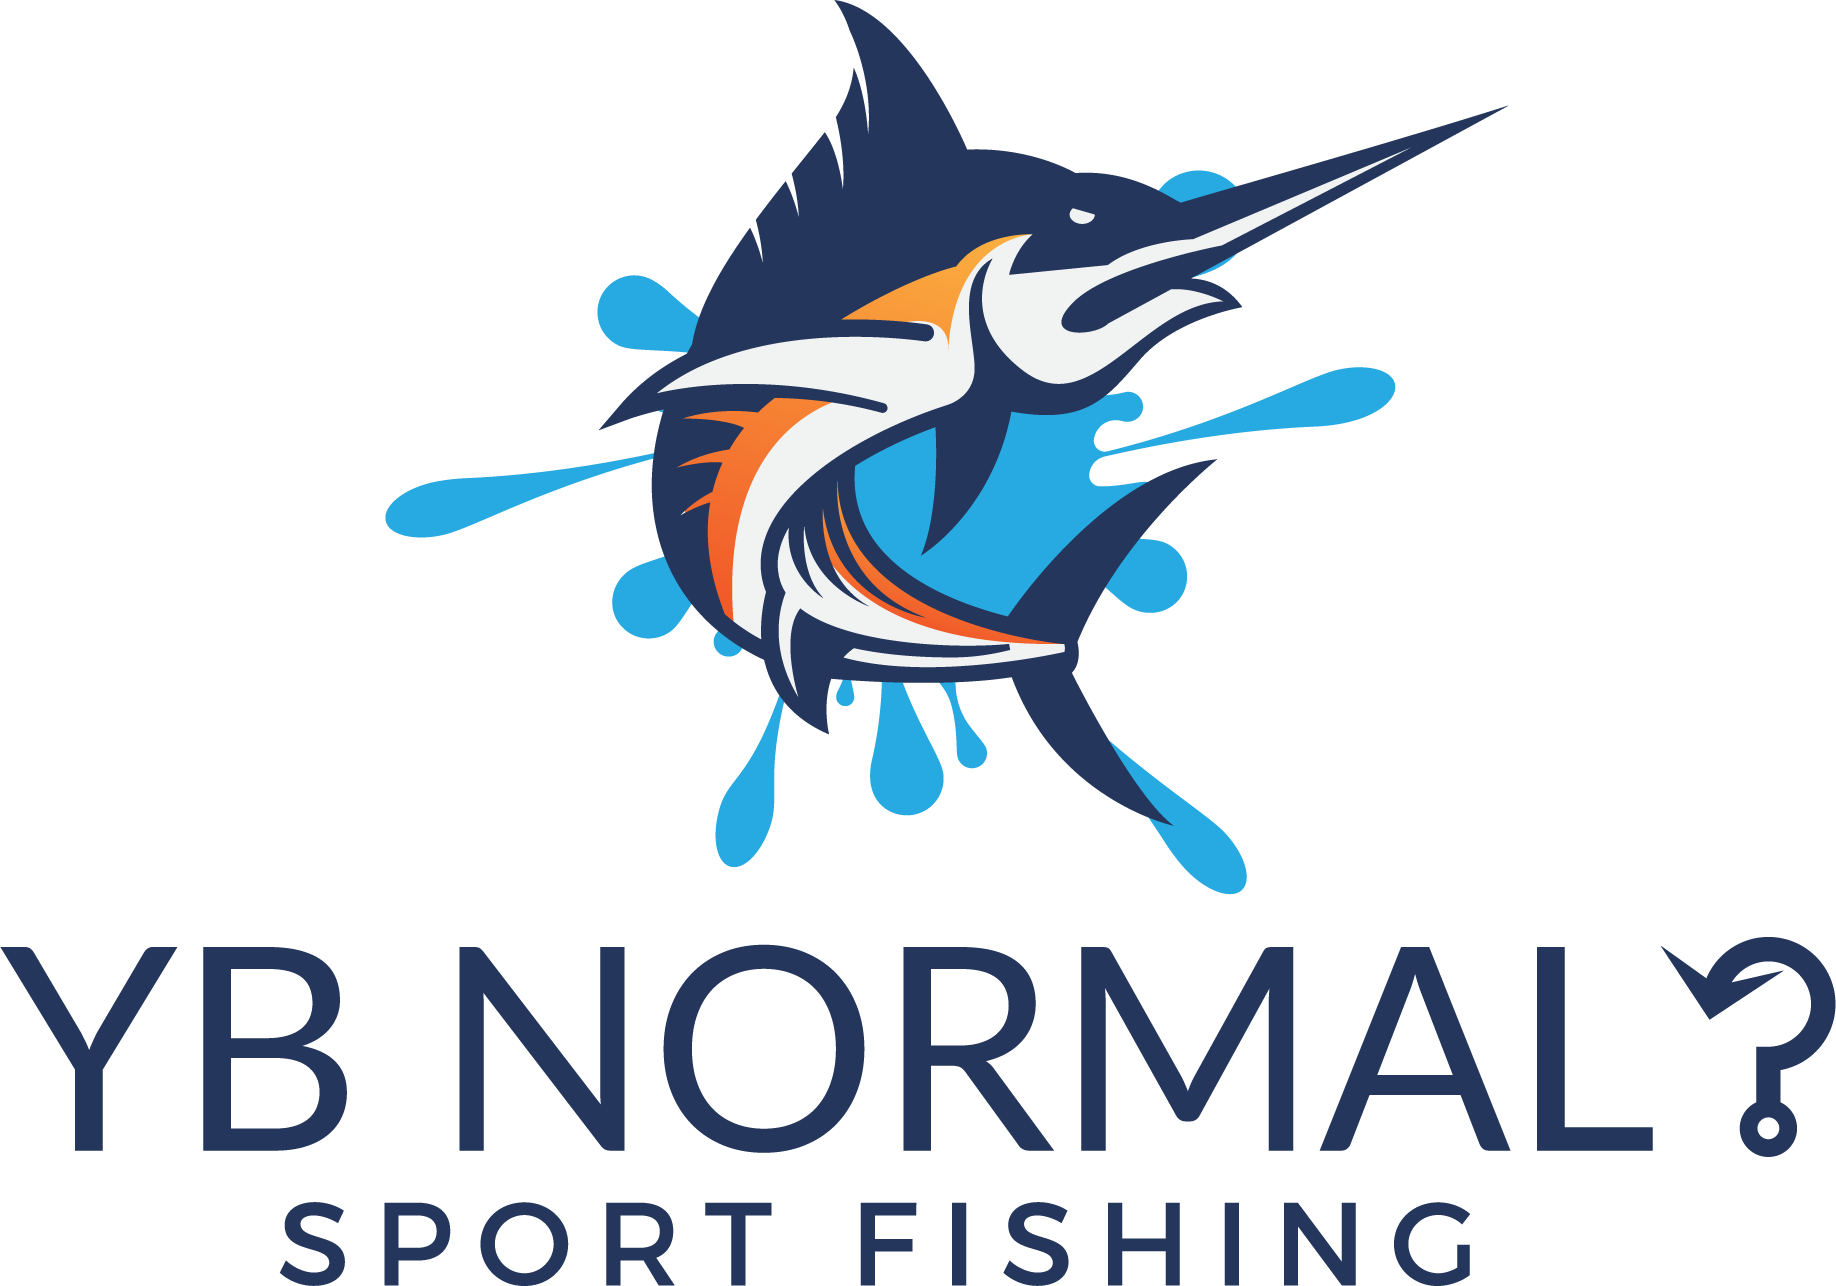 Yb Normal Sport Fishing - Fishing (1836x1286)